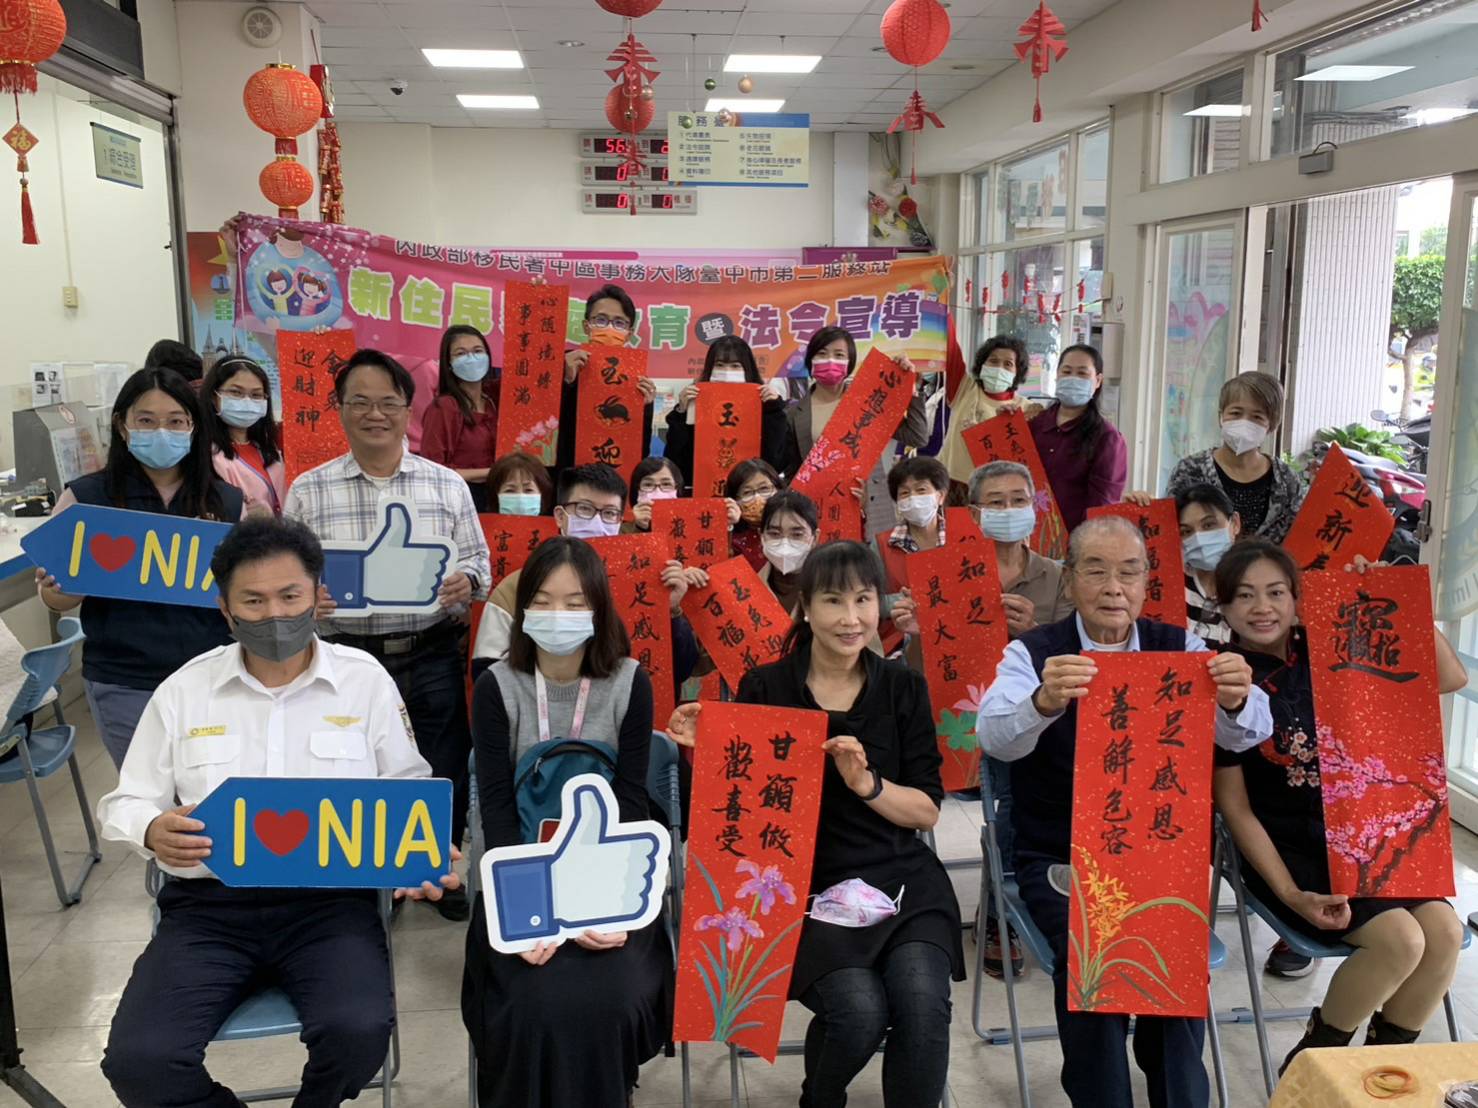 Kantor Imigrasi mengundang ahli kaligrafi dan pelukis terkenal untuk memimpin imigran baru menulis Kaligrafi. Sumber foto : Pos Pelayanan Kedua Kantor Imigrasi Kota Taichung